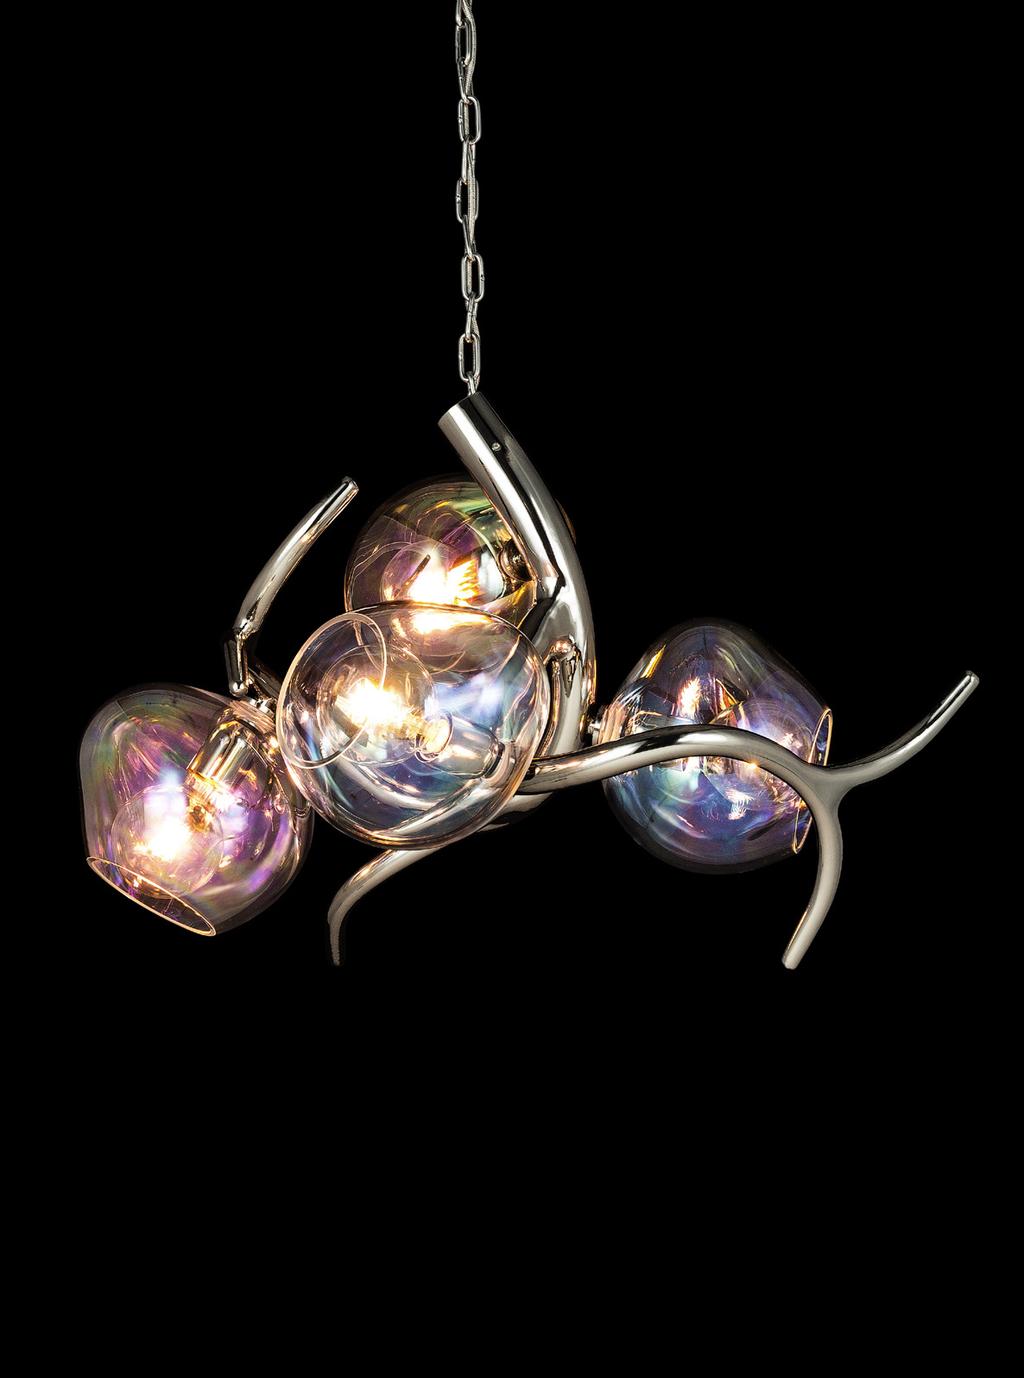 ERSA4BR-GLBRO Ersa chandelier with bronze translucent